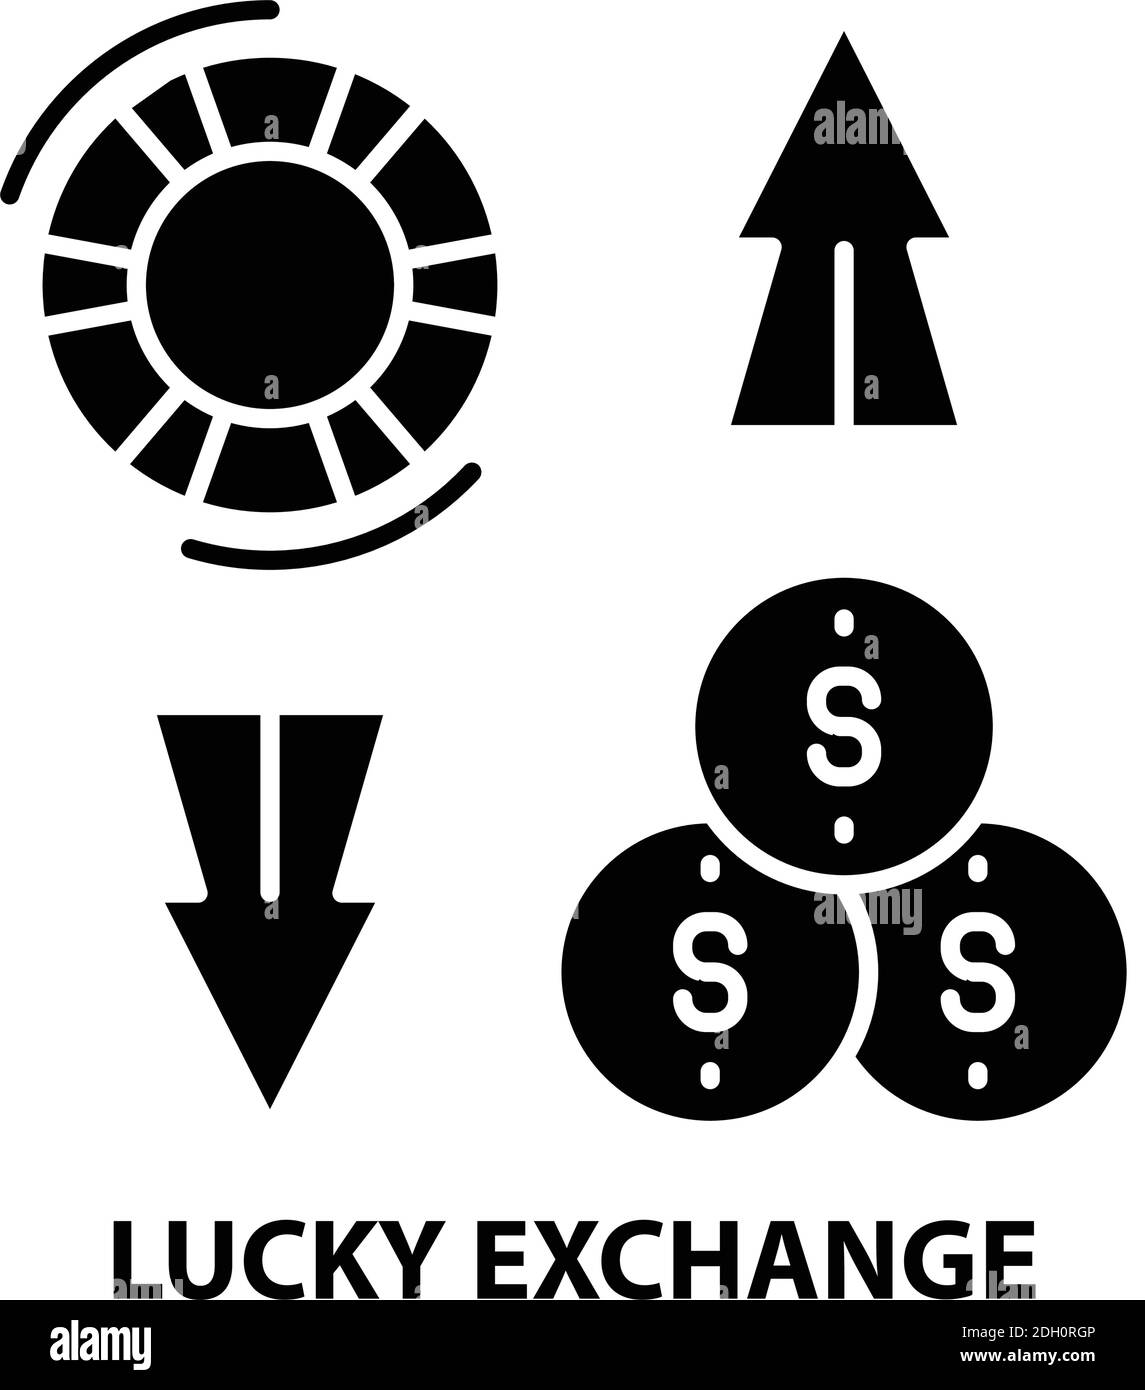 icona di scambio fortunato, segno vettoriale nero con tratti modificabili, illustrazione concettuale Illustrazione Vettoriale